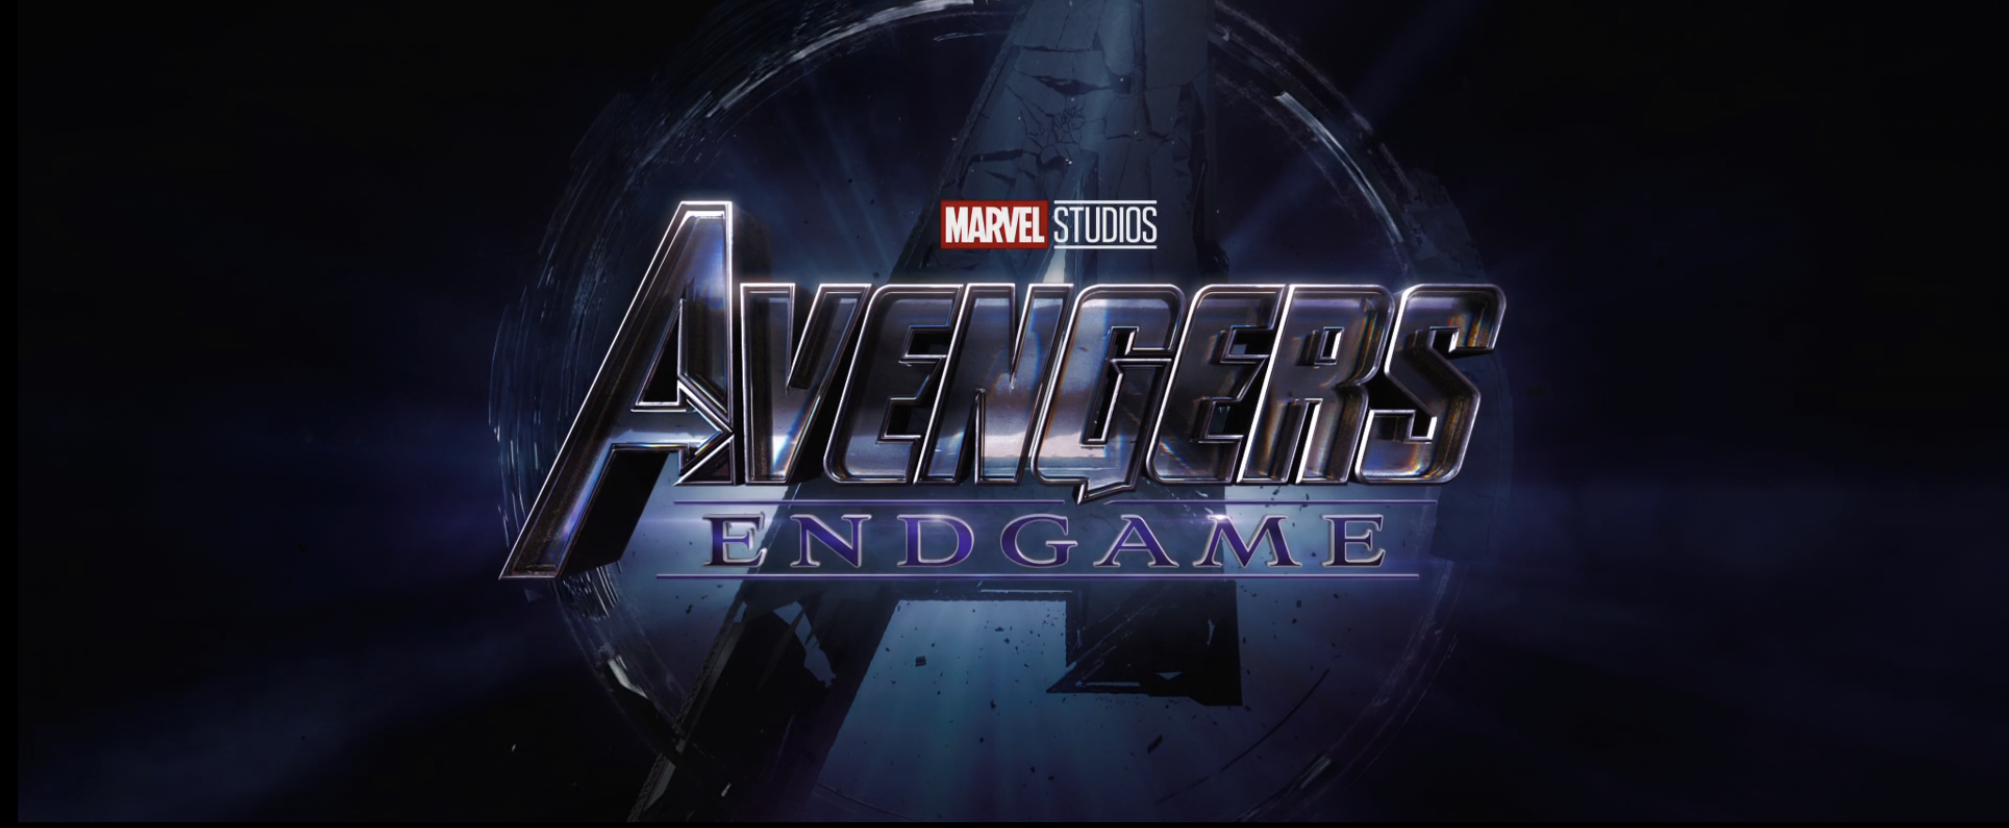 Avengers Endgame Trailer Logo